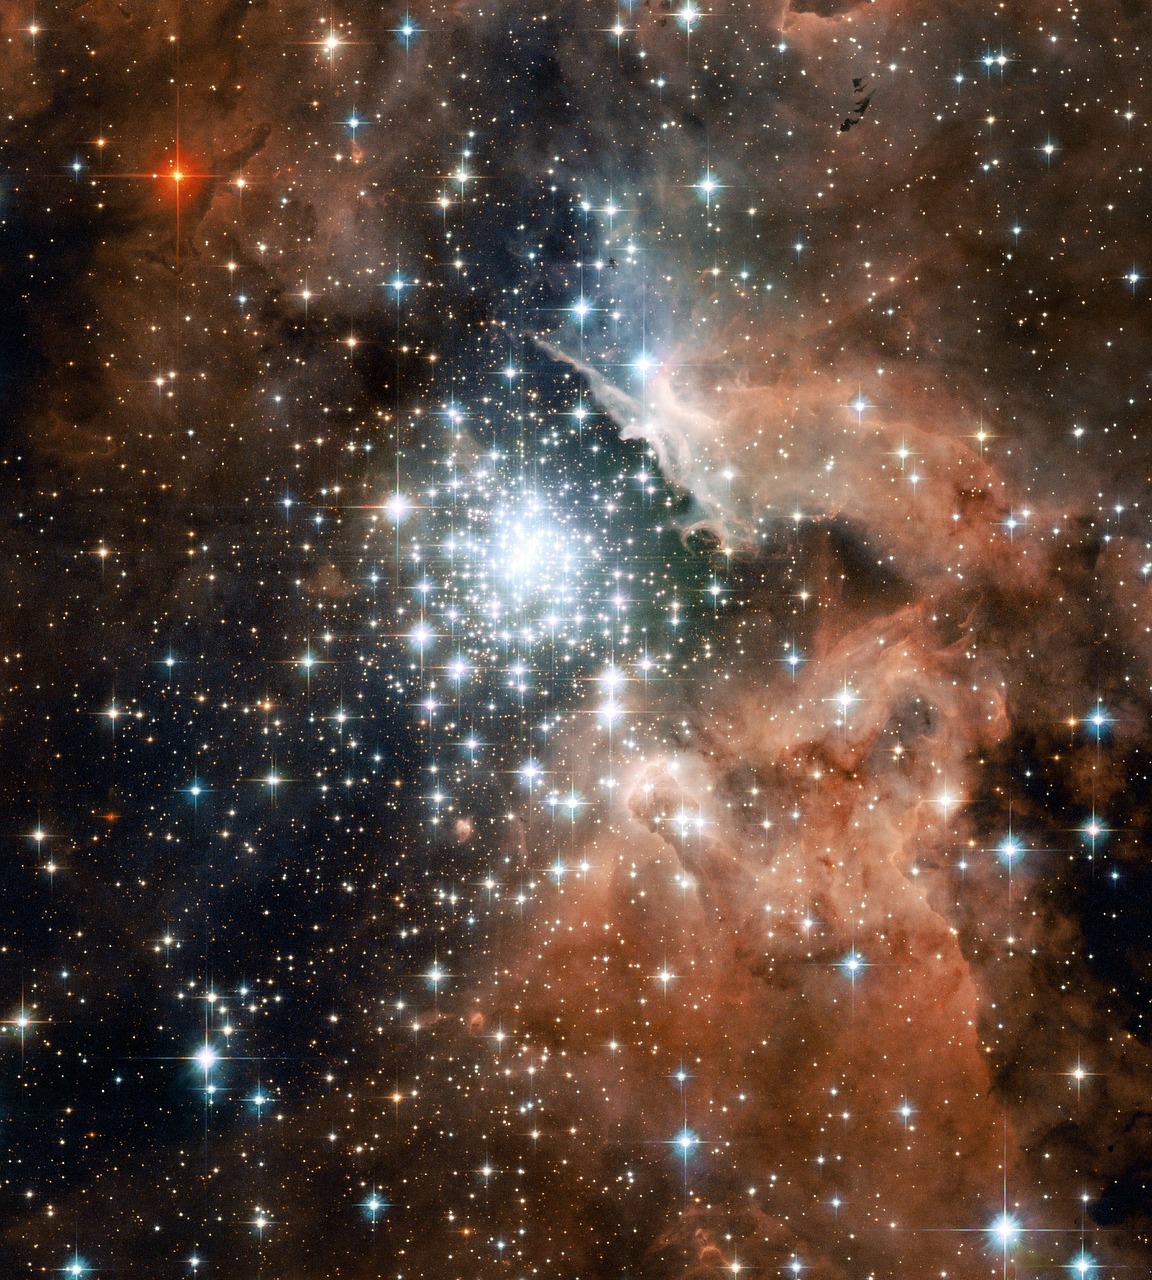 ngc 3603 emission nebula constellation free photo